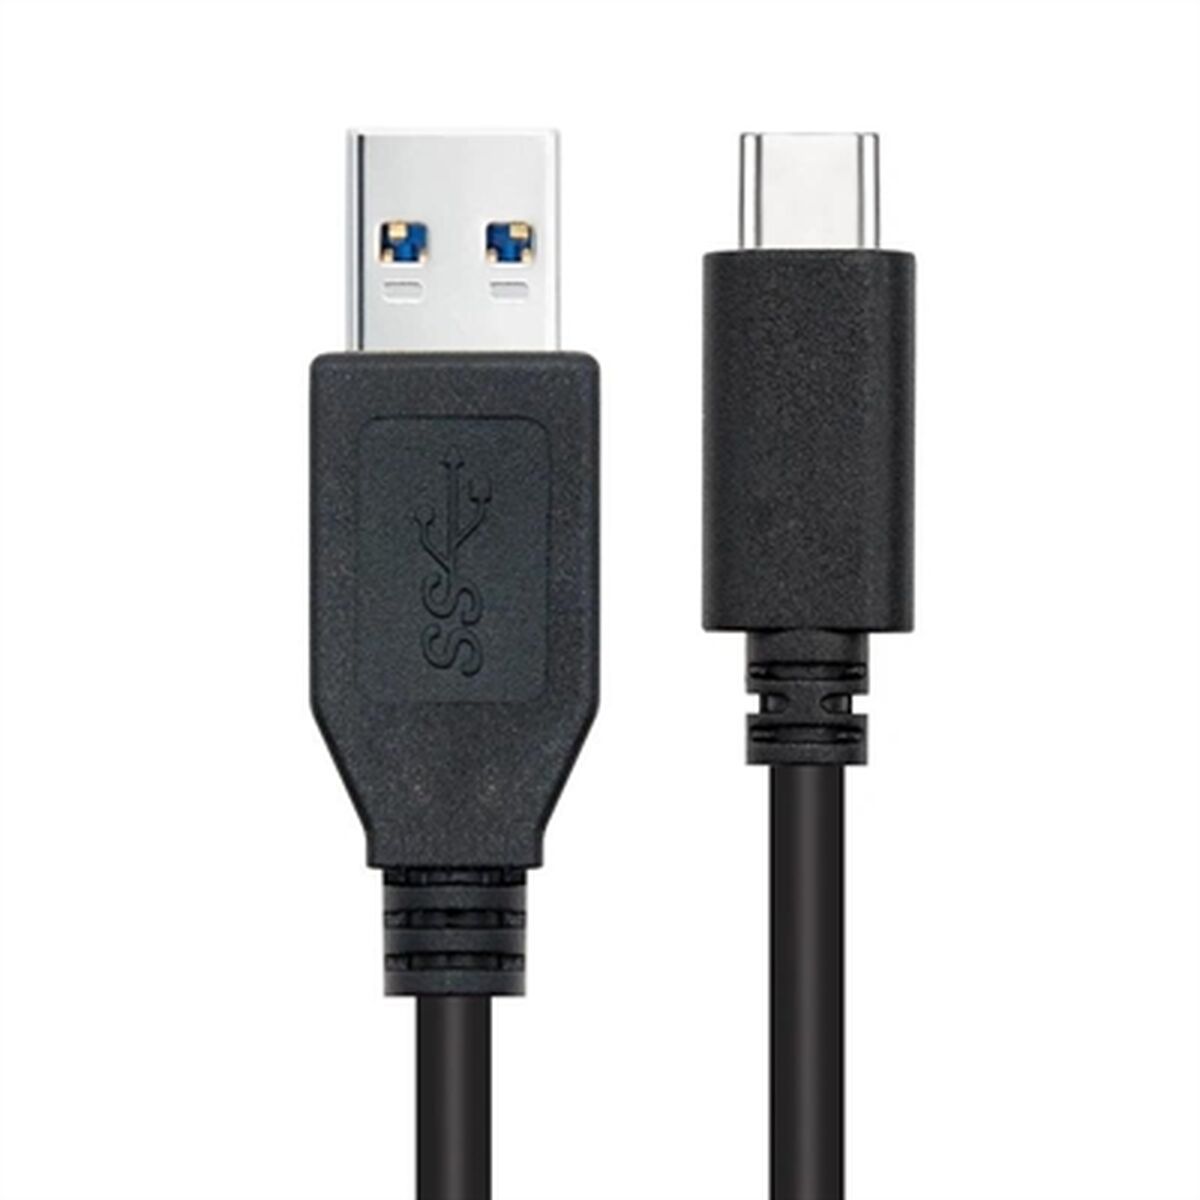 Osta tuote USB A – USB-C kaapeli NANOCABLE 10.01.4002 Musta 2 m (1 osaa) verkkokaupastamme Korhone: Urheilu & Vapaa-aika 20% alennuksella koodilla VIIKONLOPPU